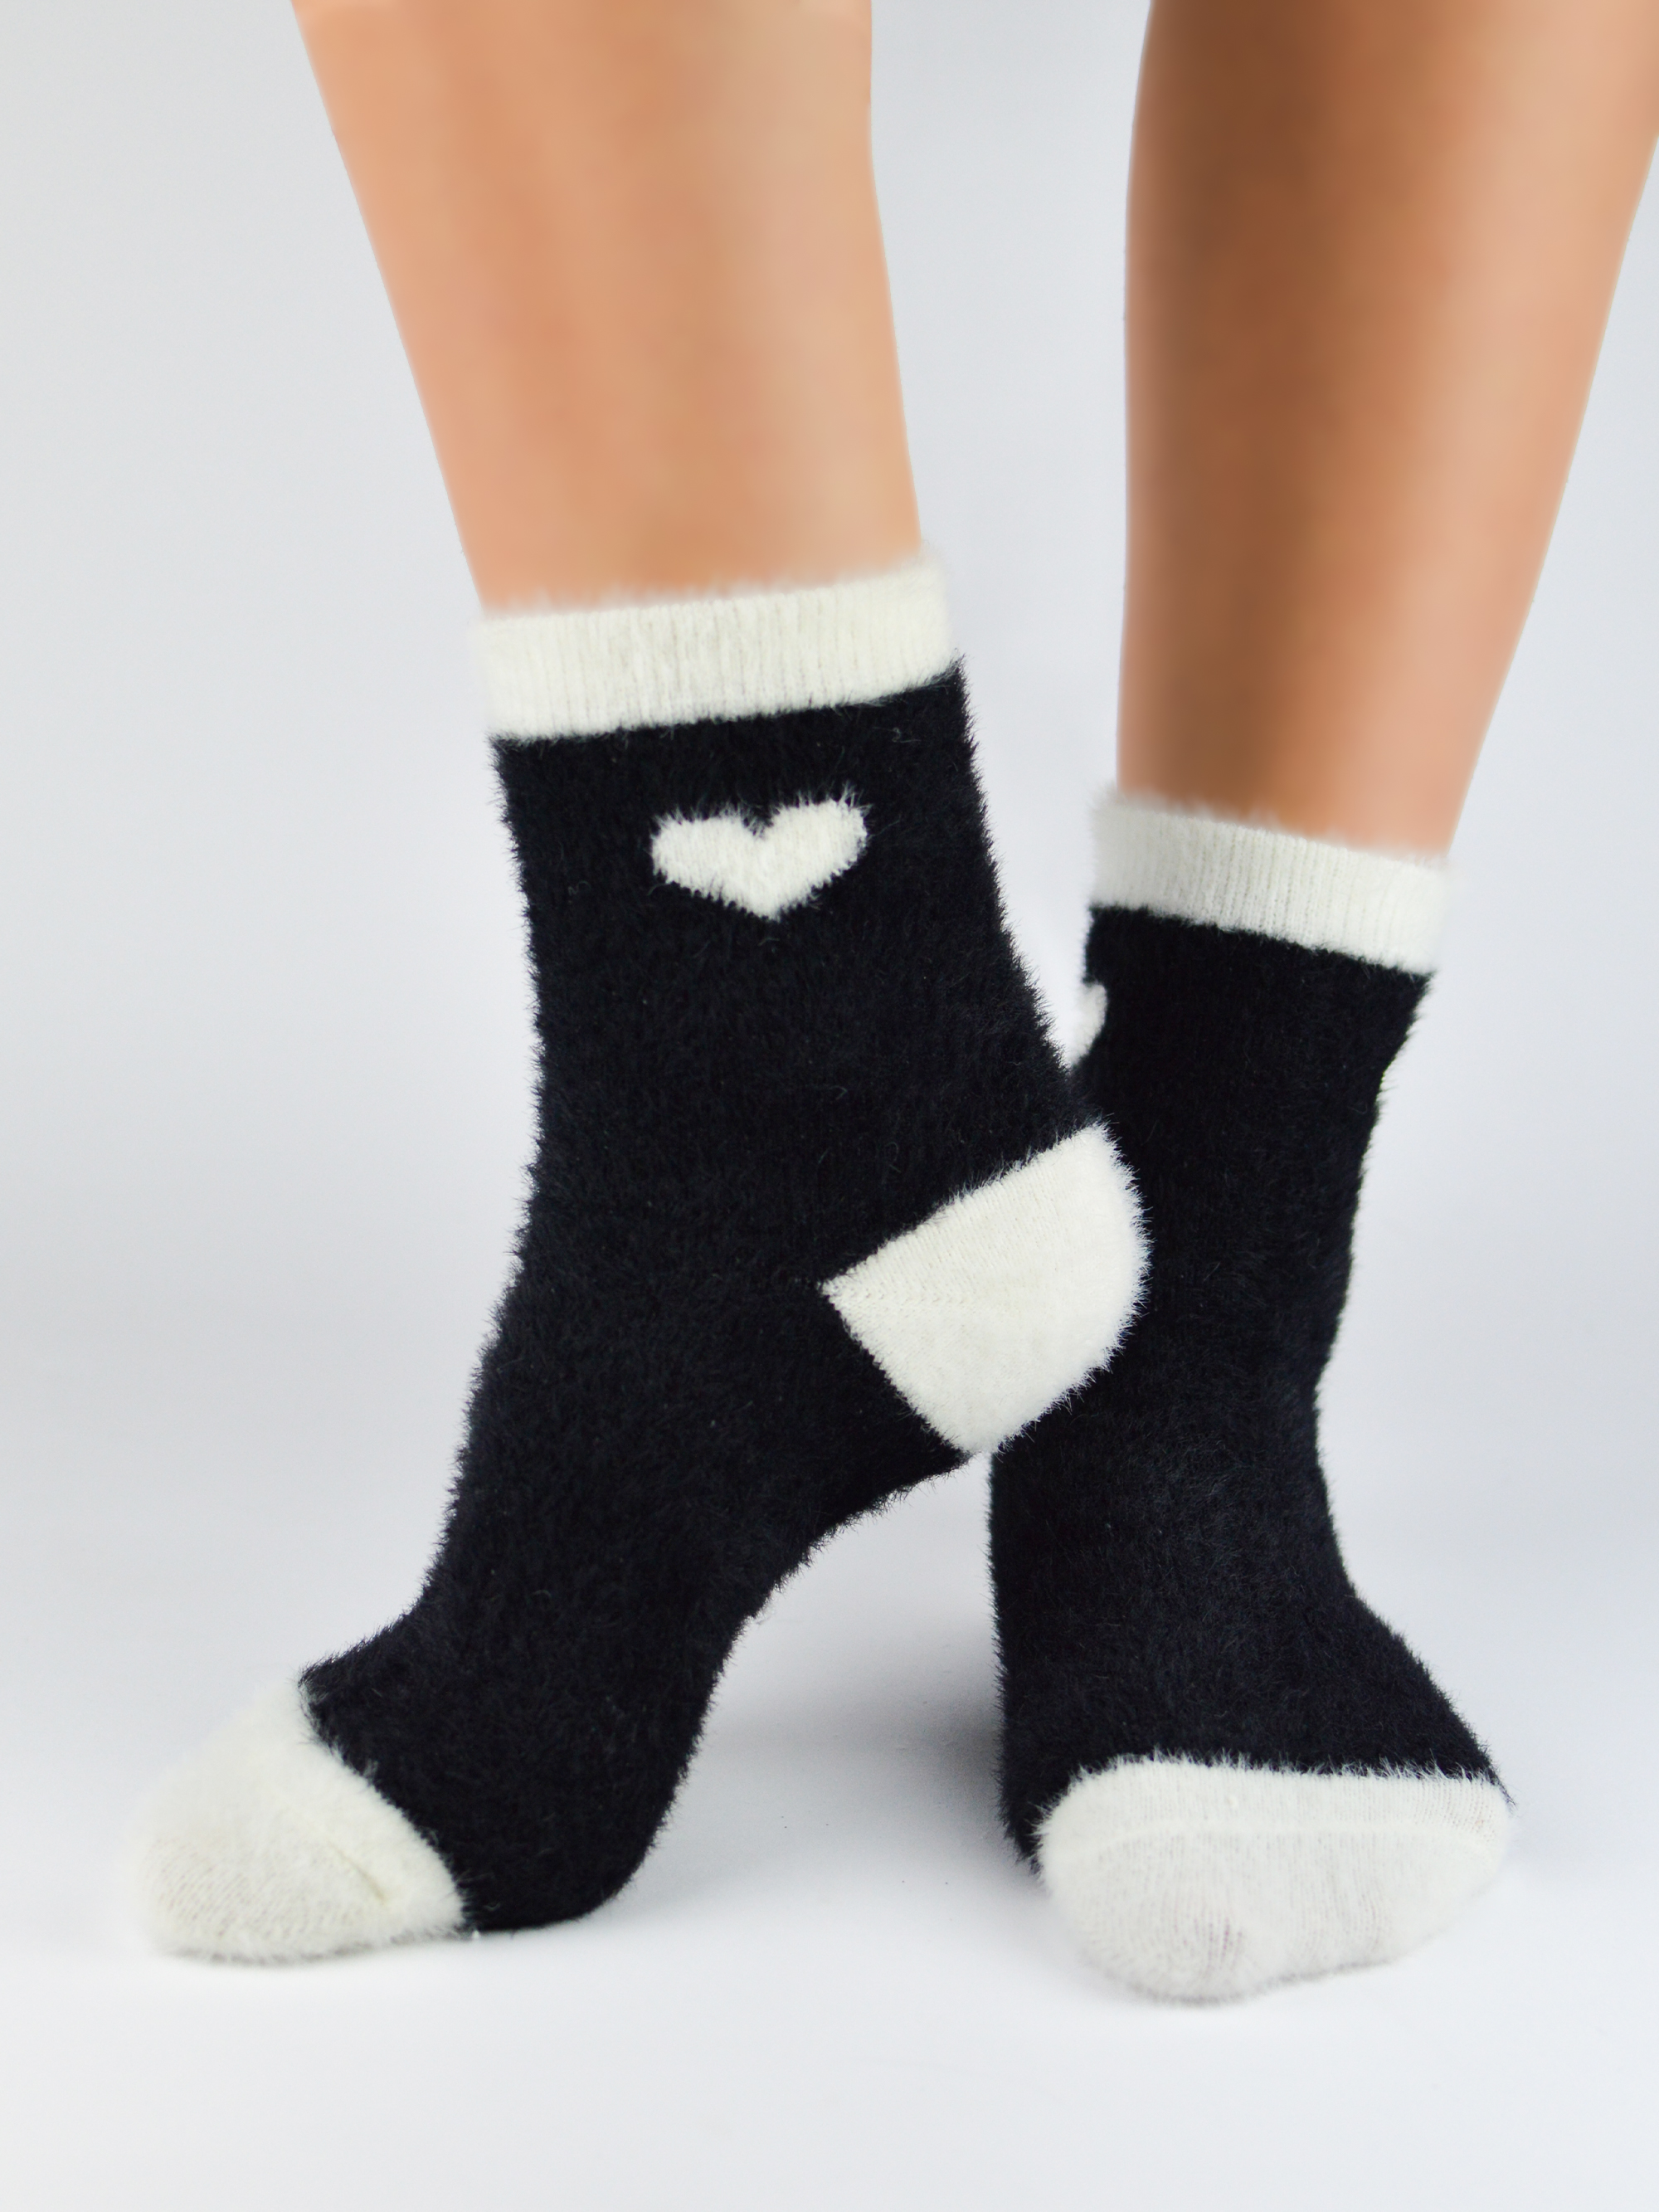 NOVITI Woman's Socks SB033-W-02